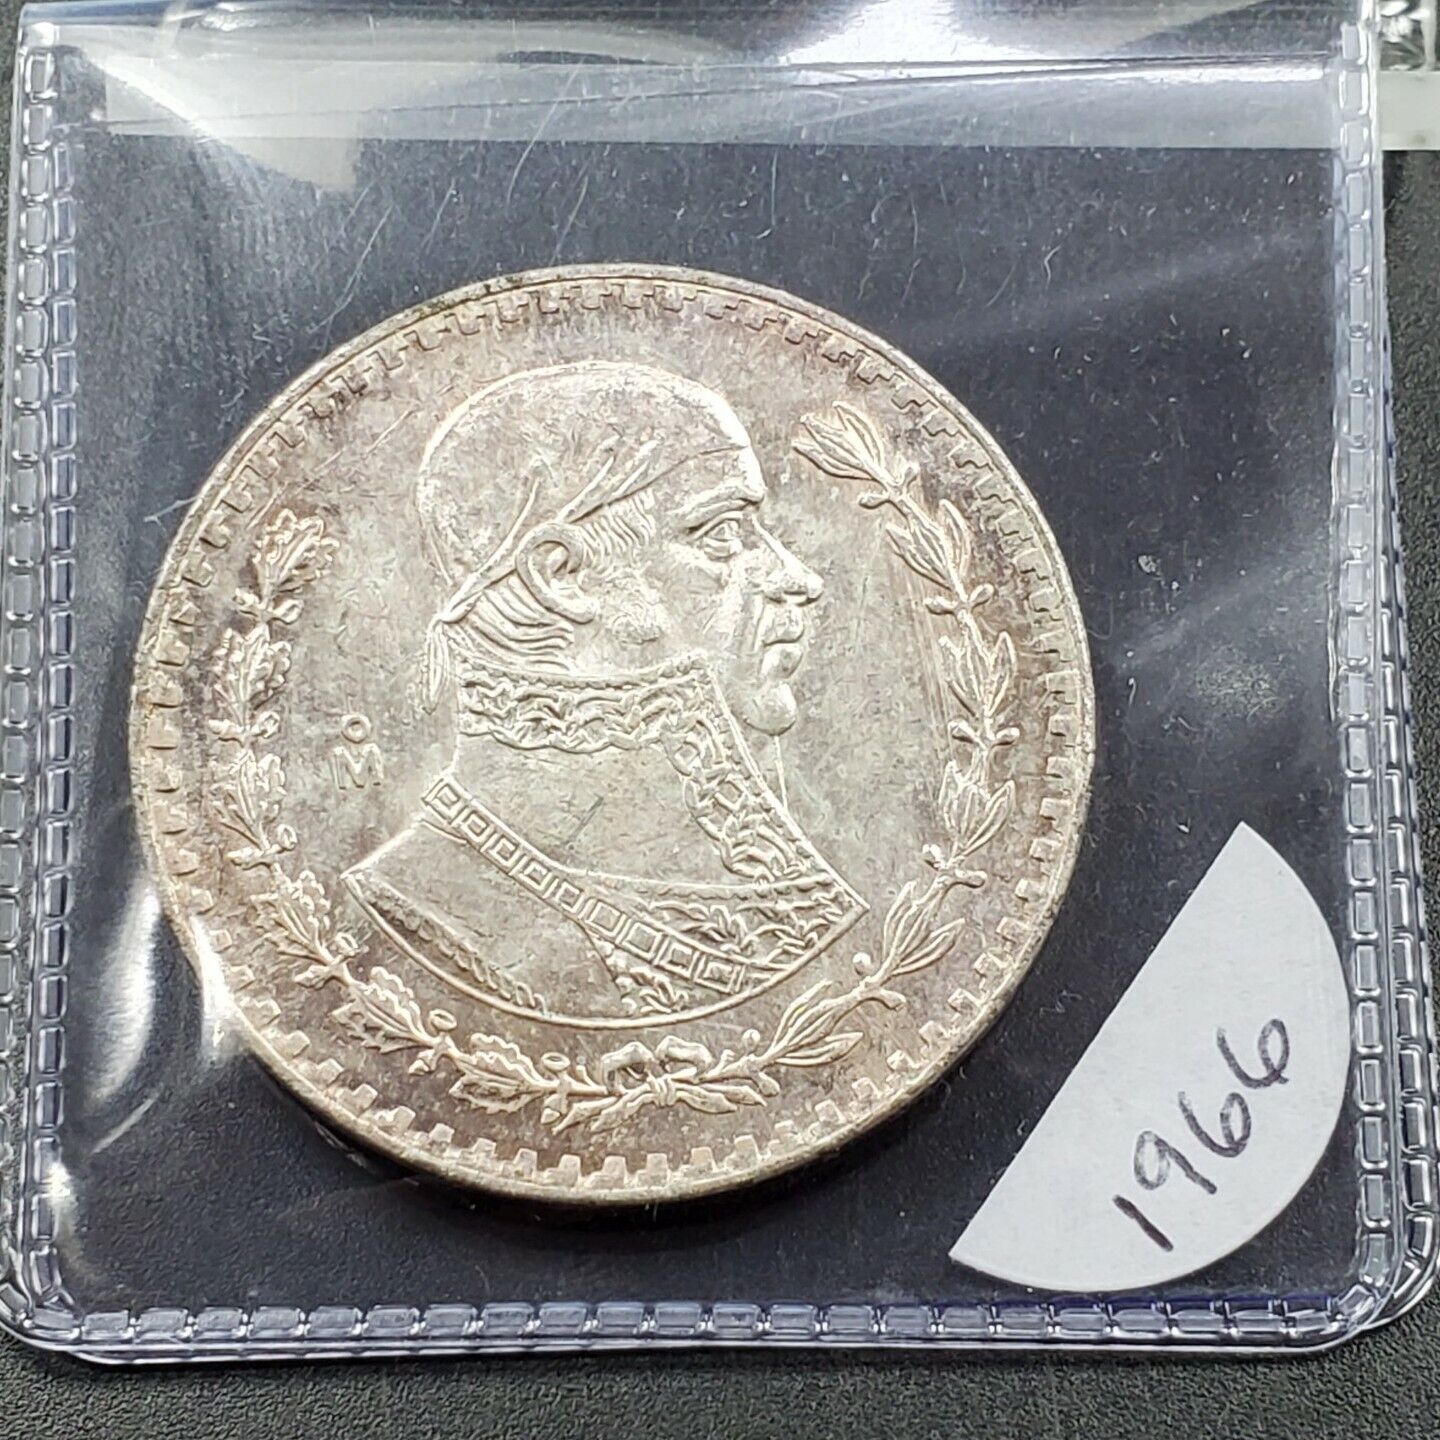 1966 Mo UN 1 Peso Coin PQ BU Uncirculated Mexico Some Toning